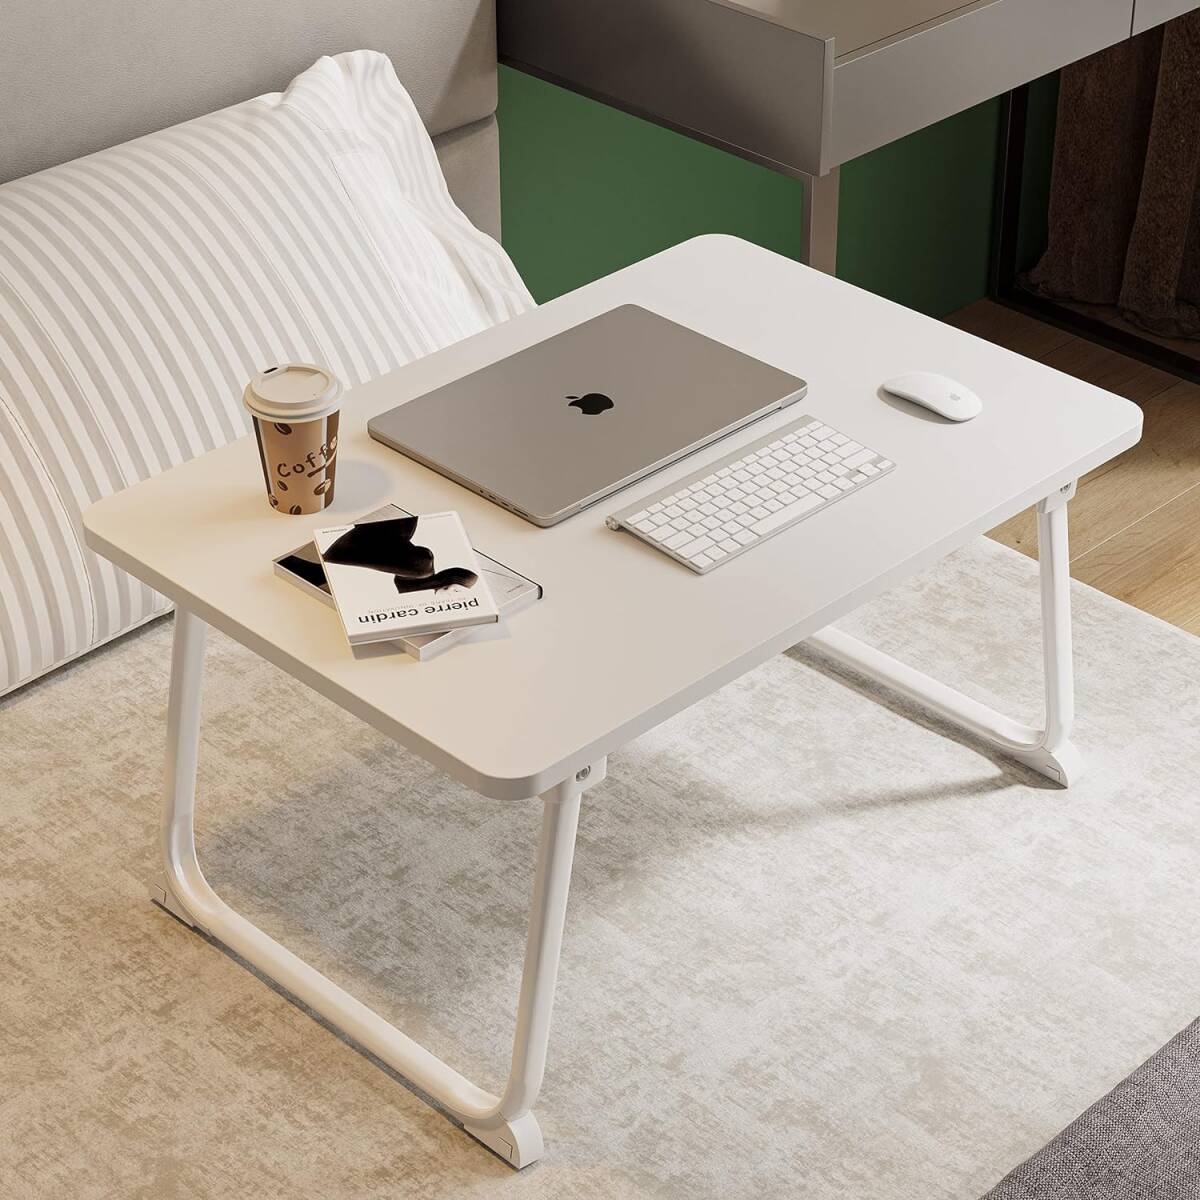 折り畳みテーブルパソコンデスクちゃぶ台 ベッドテーブル ローテーブル (長60*幅40cm, ホワイト)の画像1